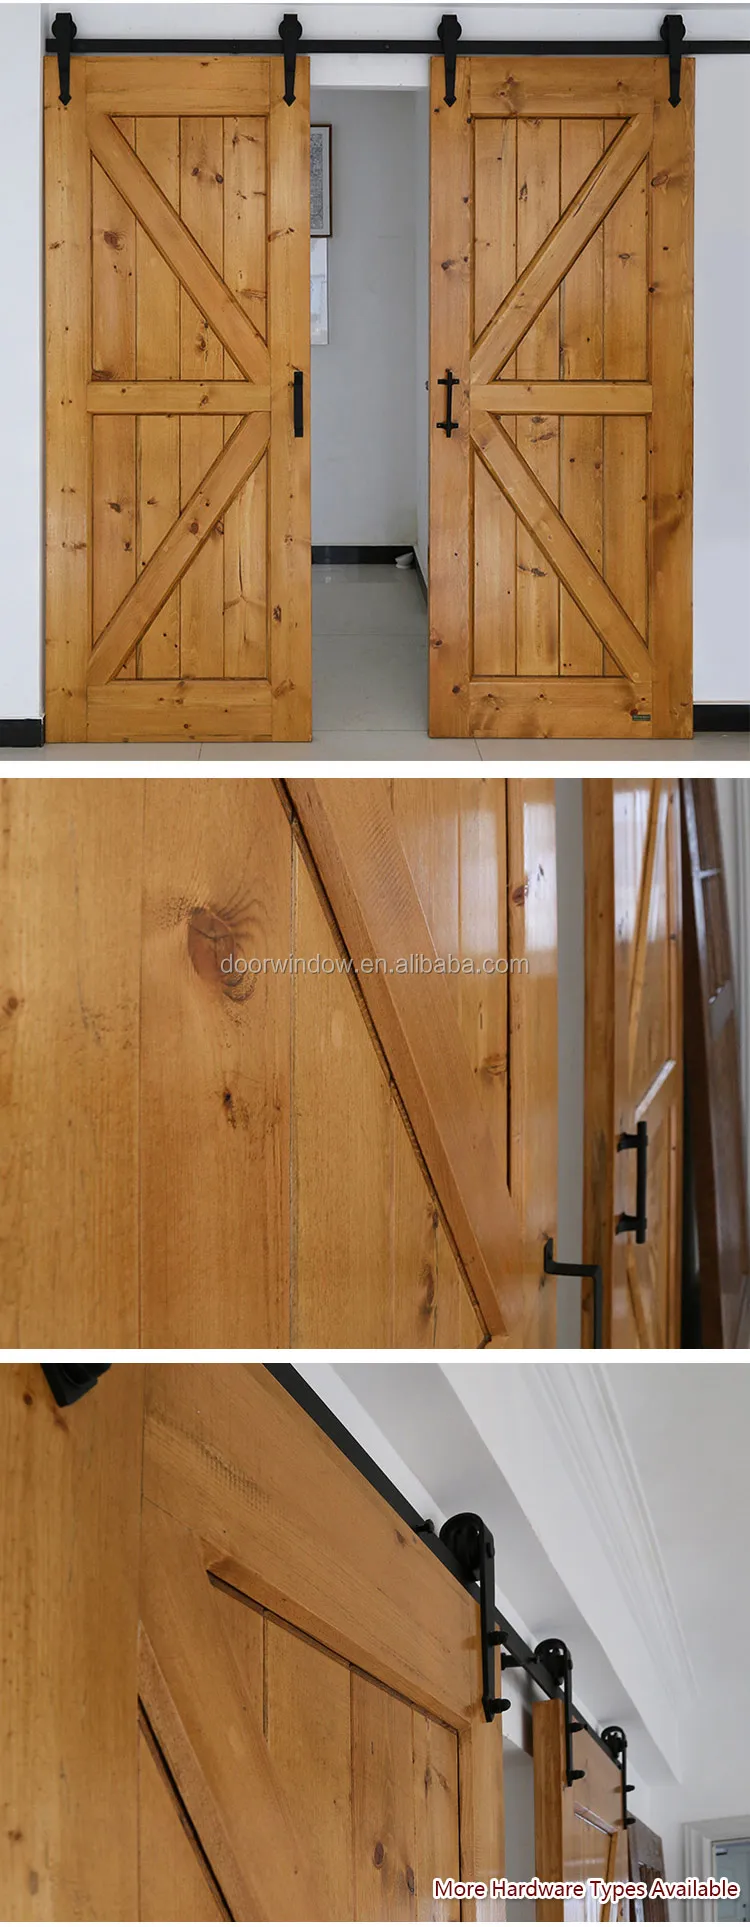 American style interior doors wood room door designs photo sliding barn door with track